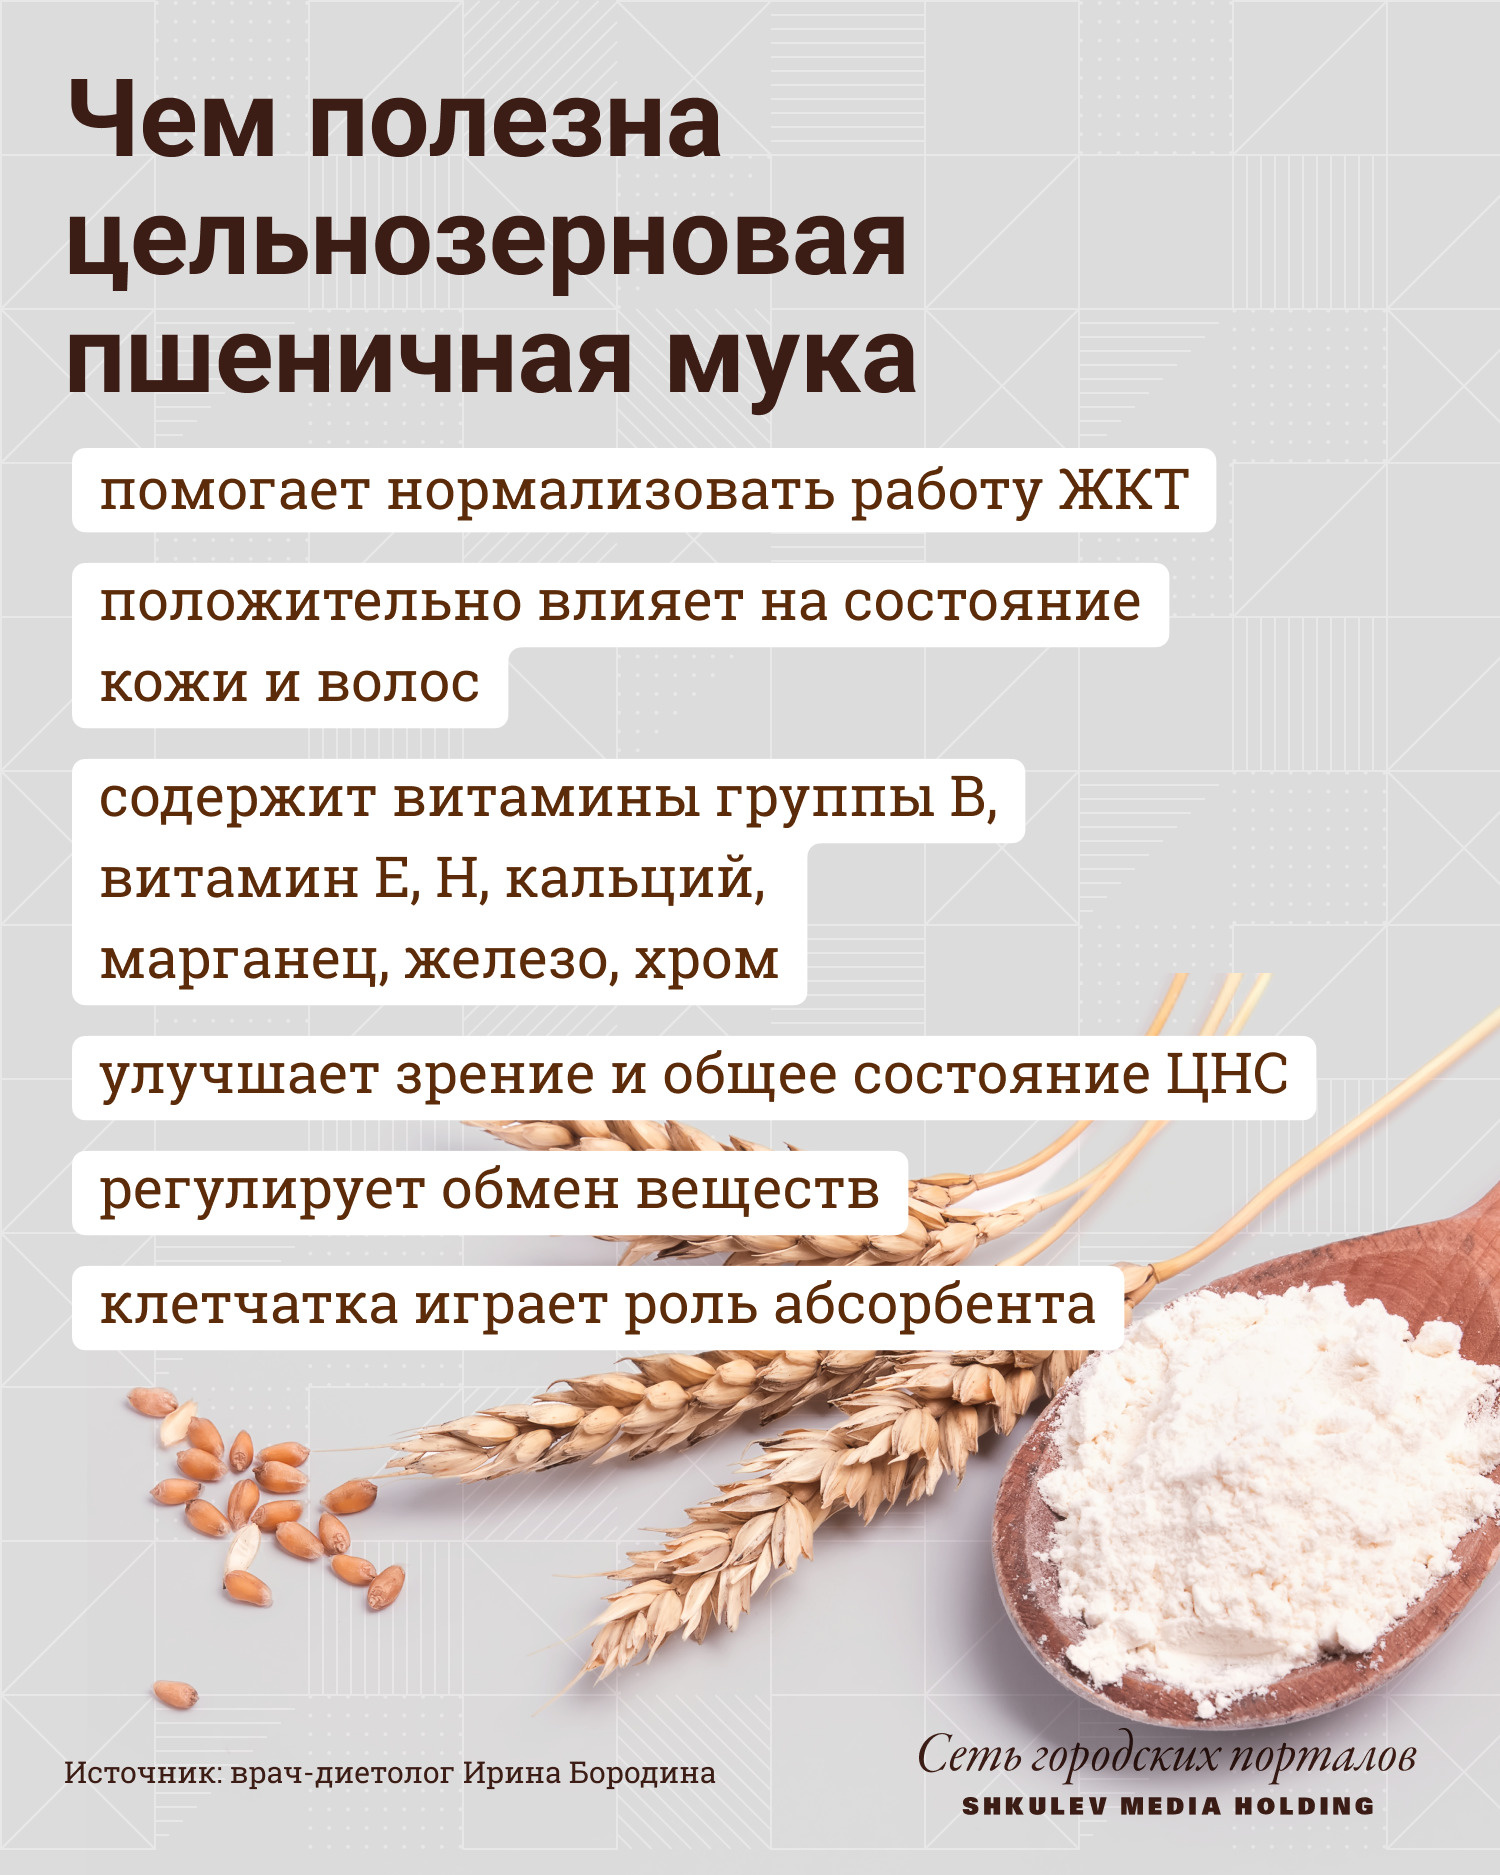 Полезные свойства цельнозерновой пшеничной муки